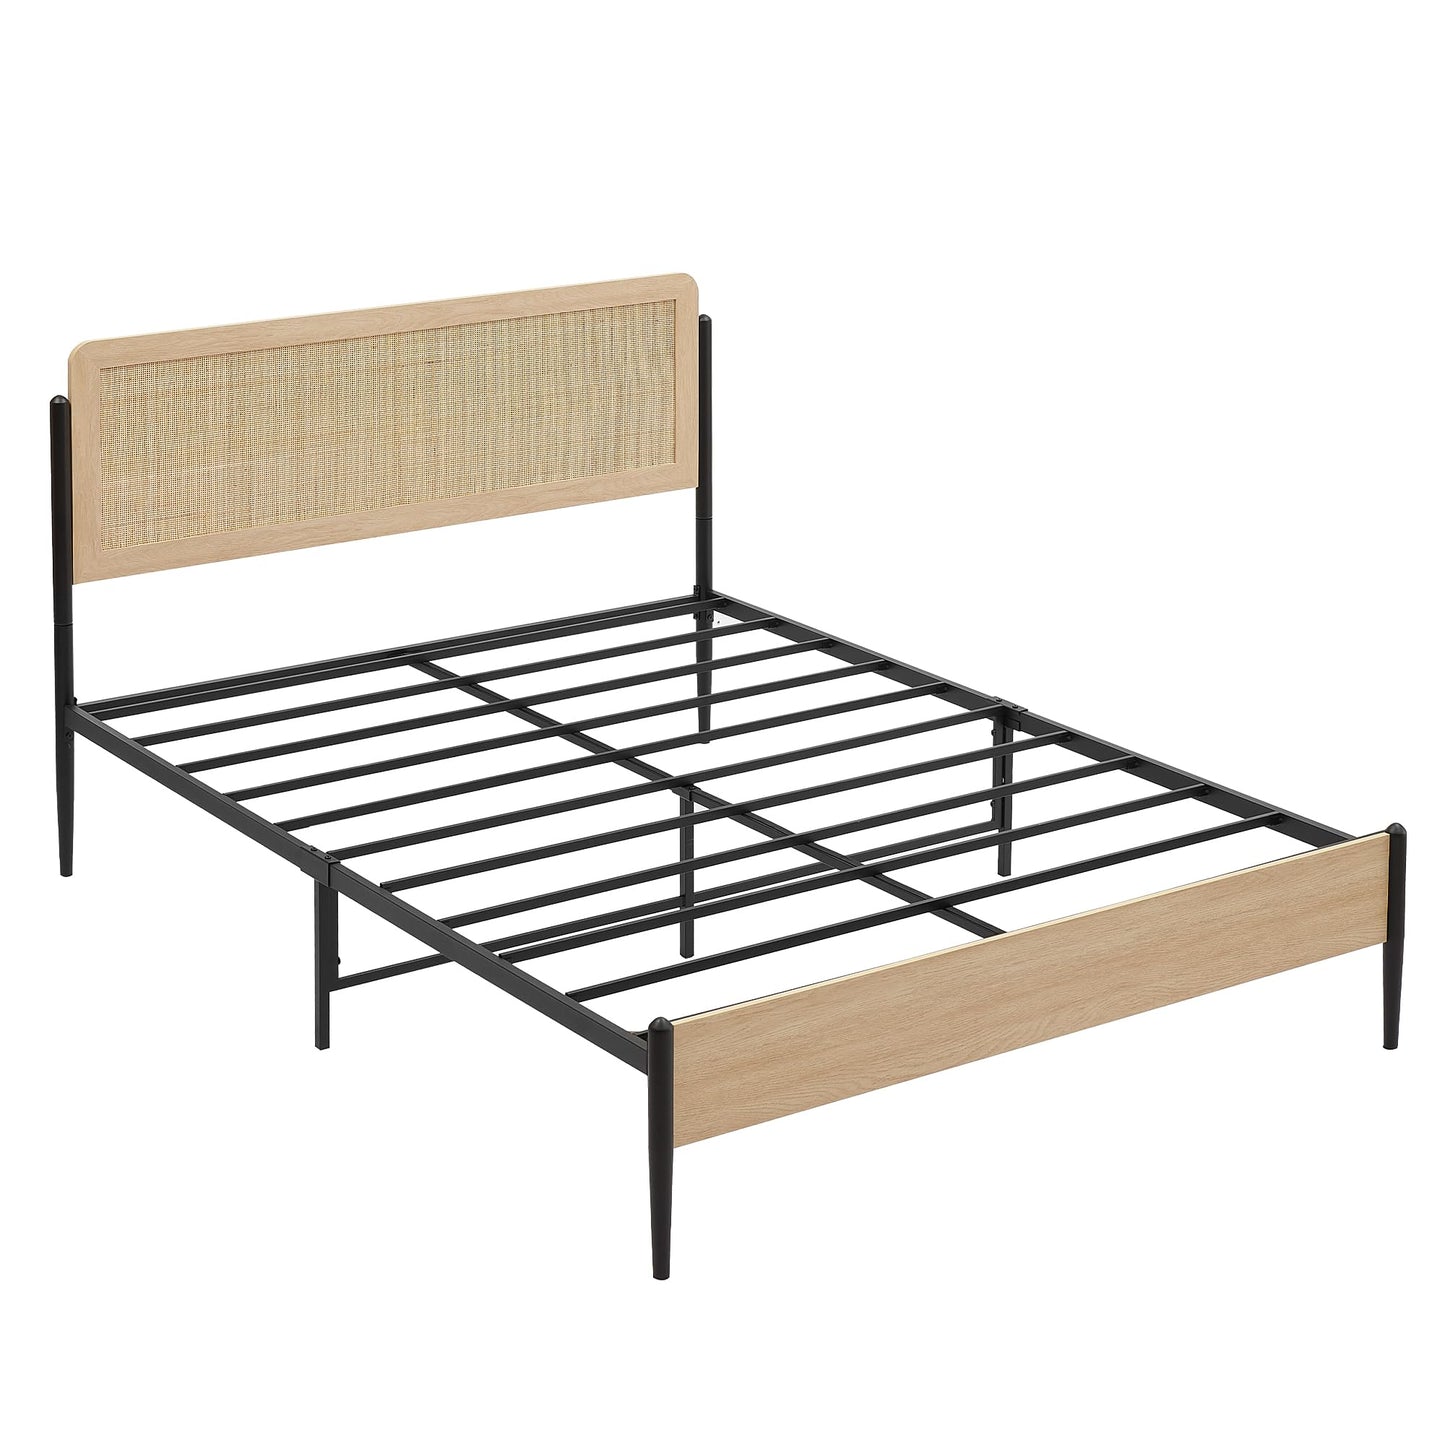 Bed Frame Full Size, Modern Platform Bed Frame with Rattan Headboard Metal Slat Support Bed Frame with Storage-Oak Full